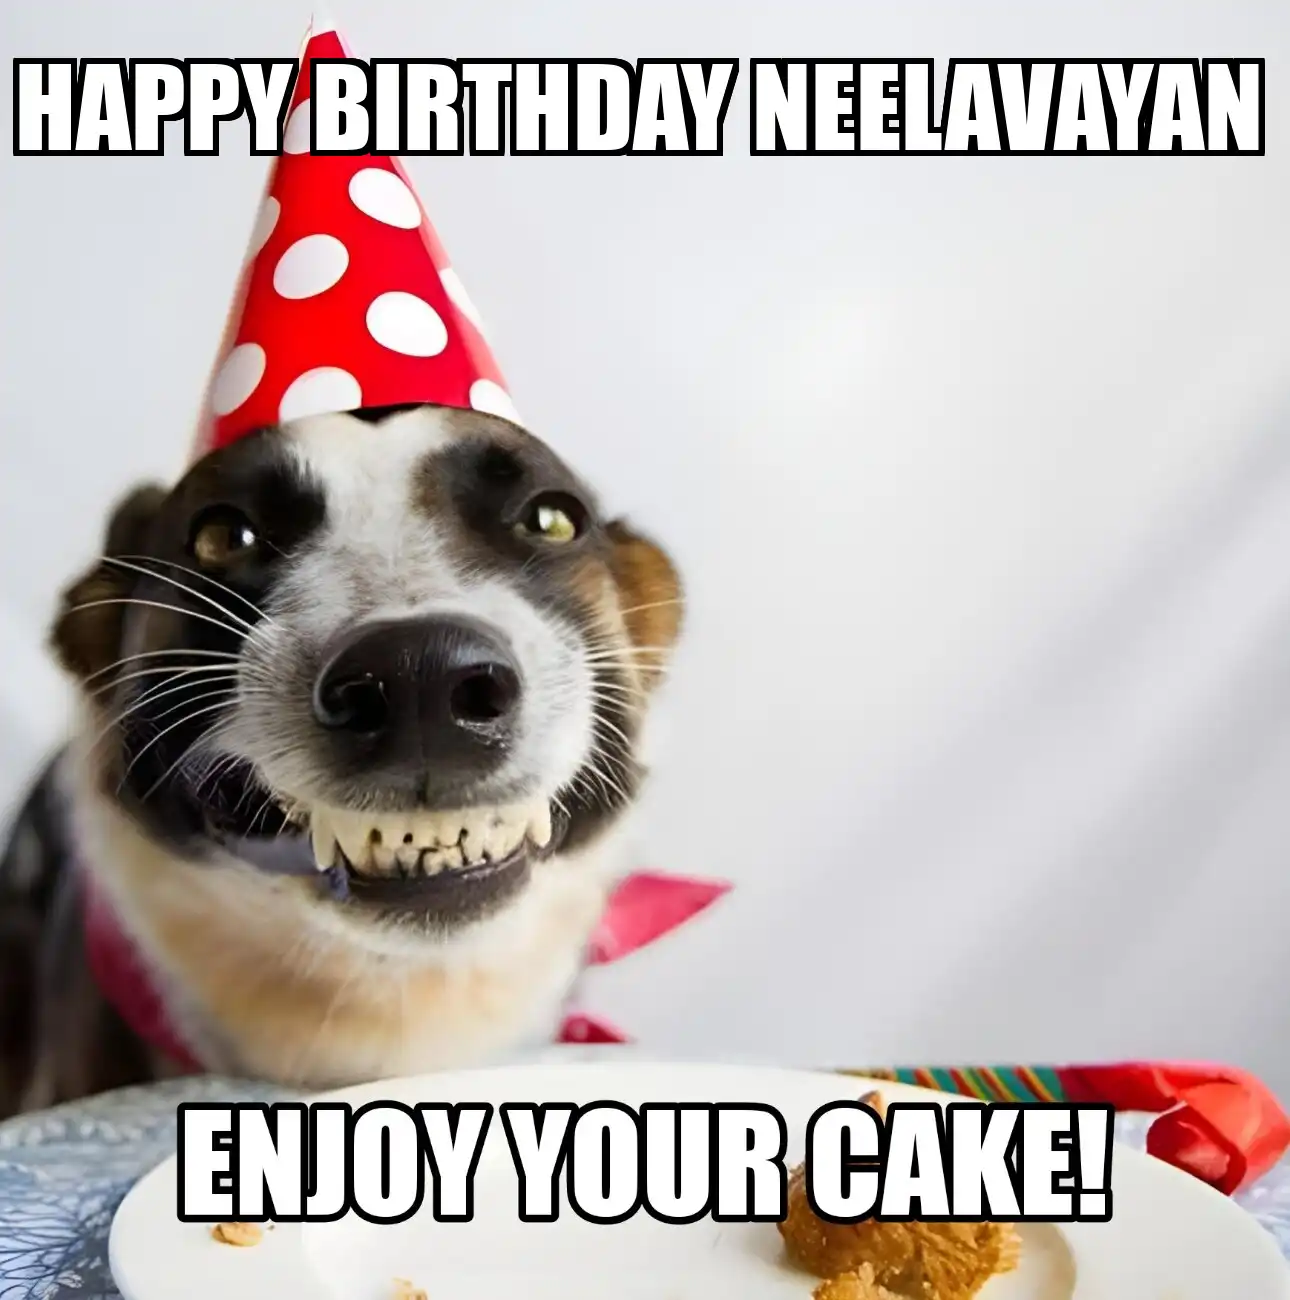 Happy Birthday Neelavayan Enjoy Your Cake Dog Meme